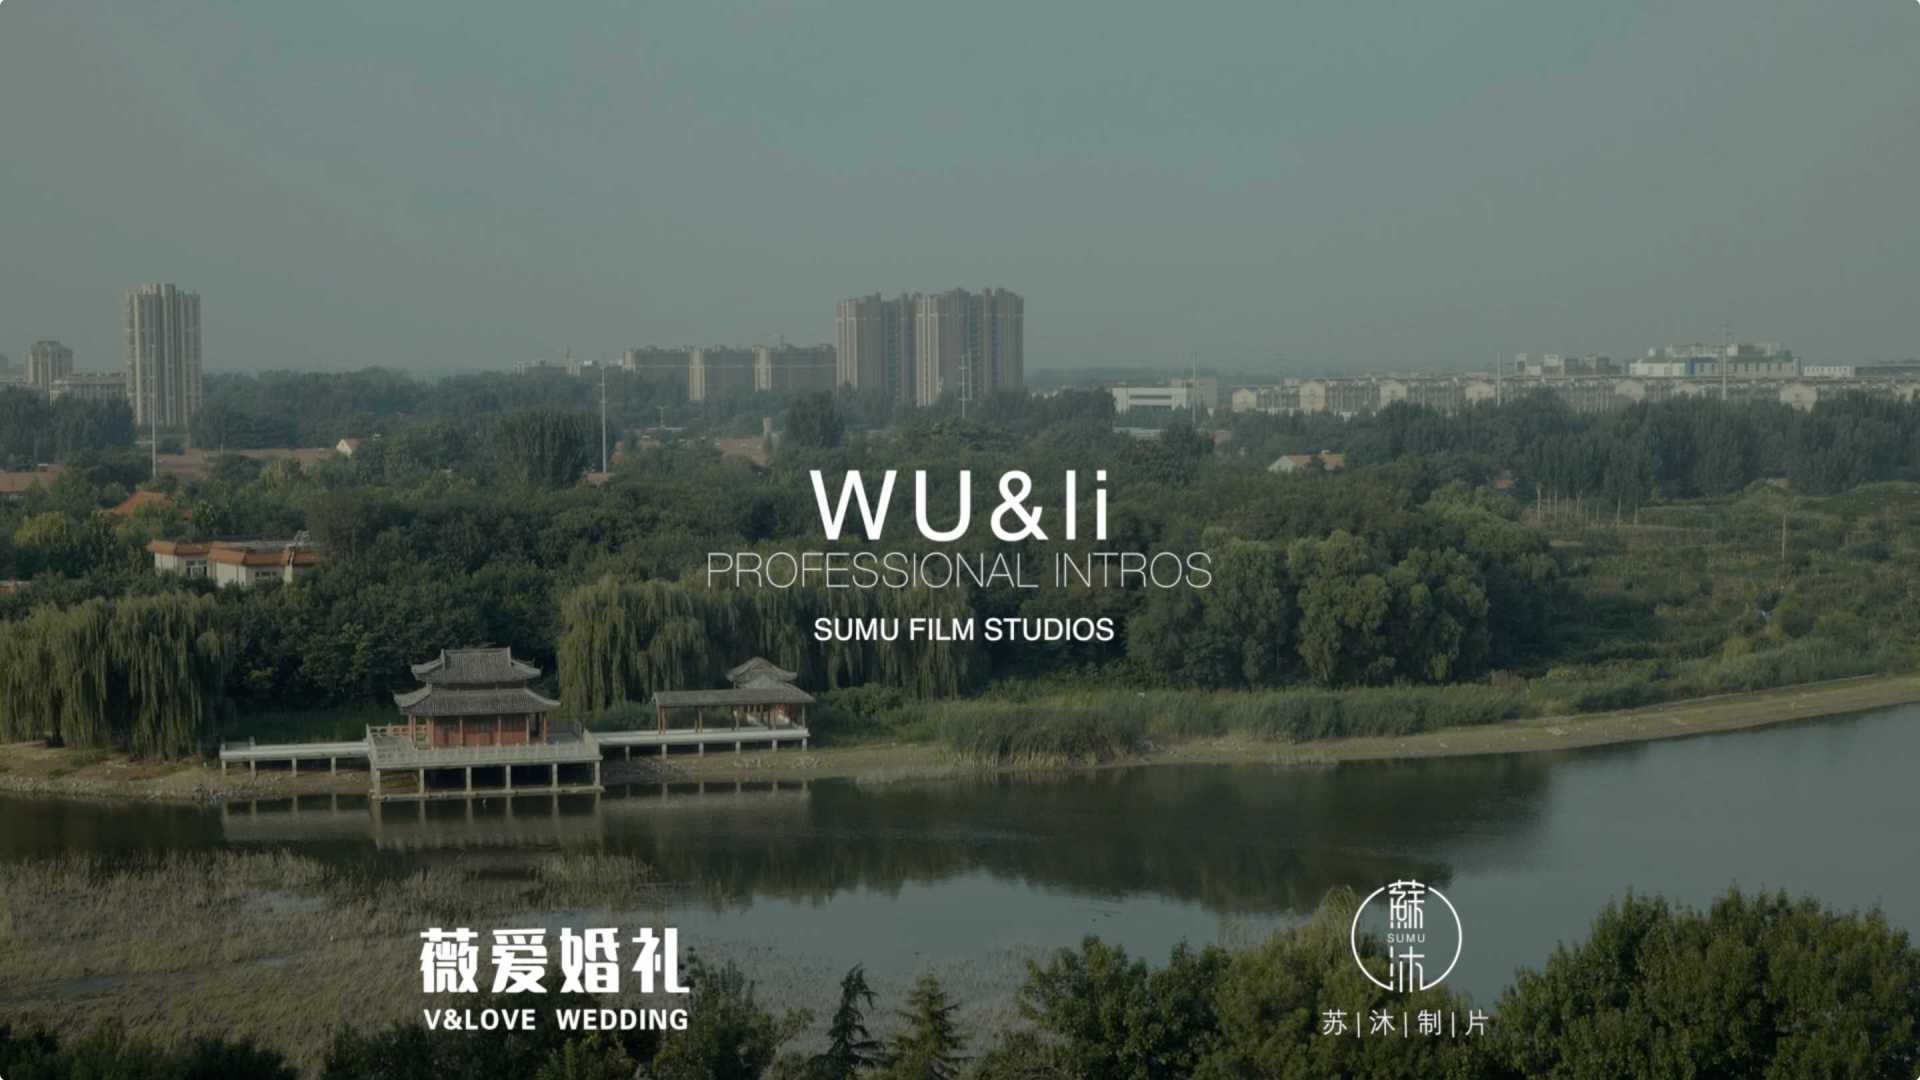 薇爱婚礼「Wu&Li」Aug.4th.2021|苏沐制片|席前快剪|